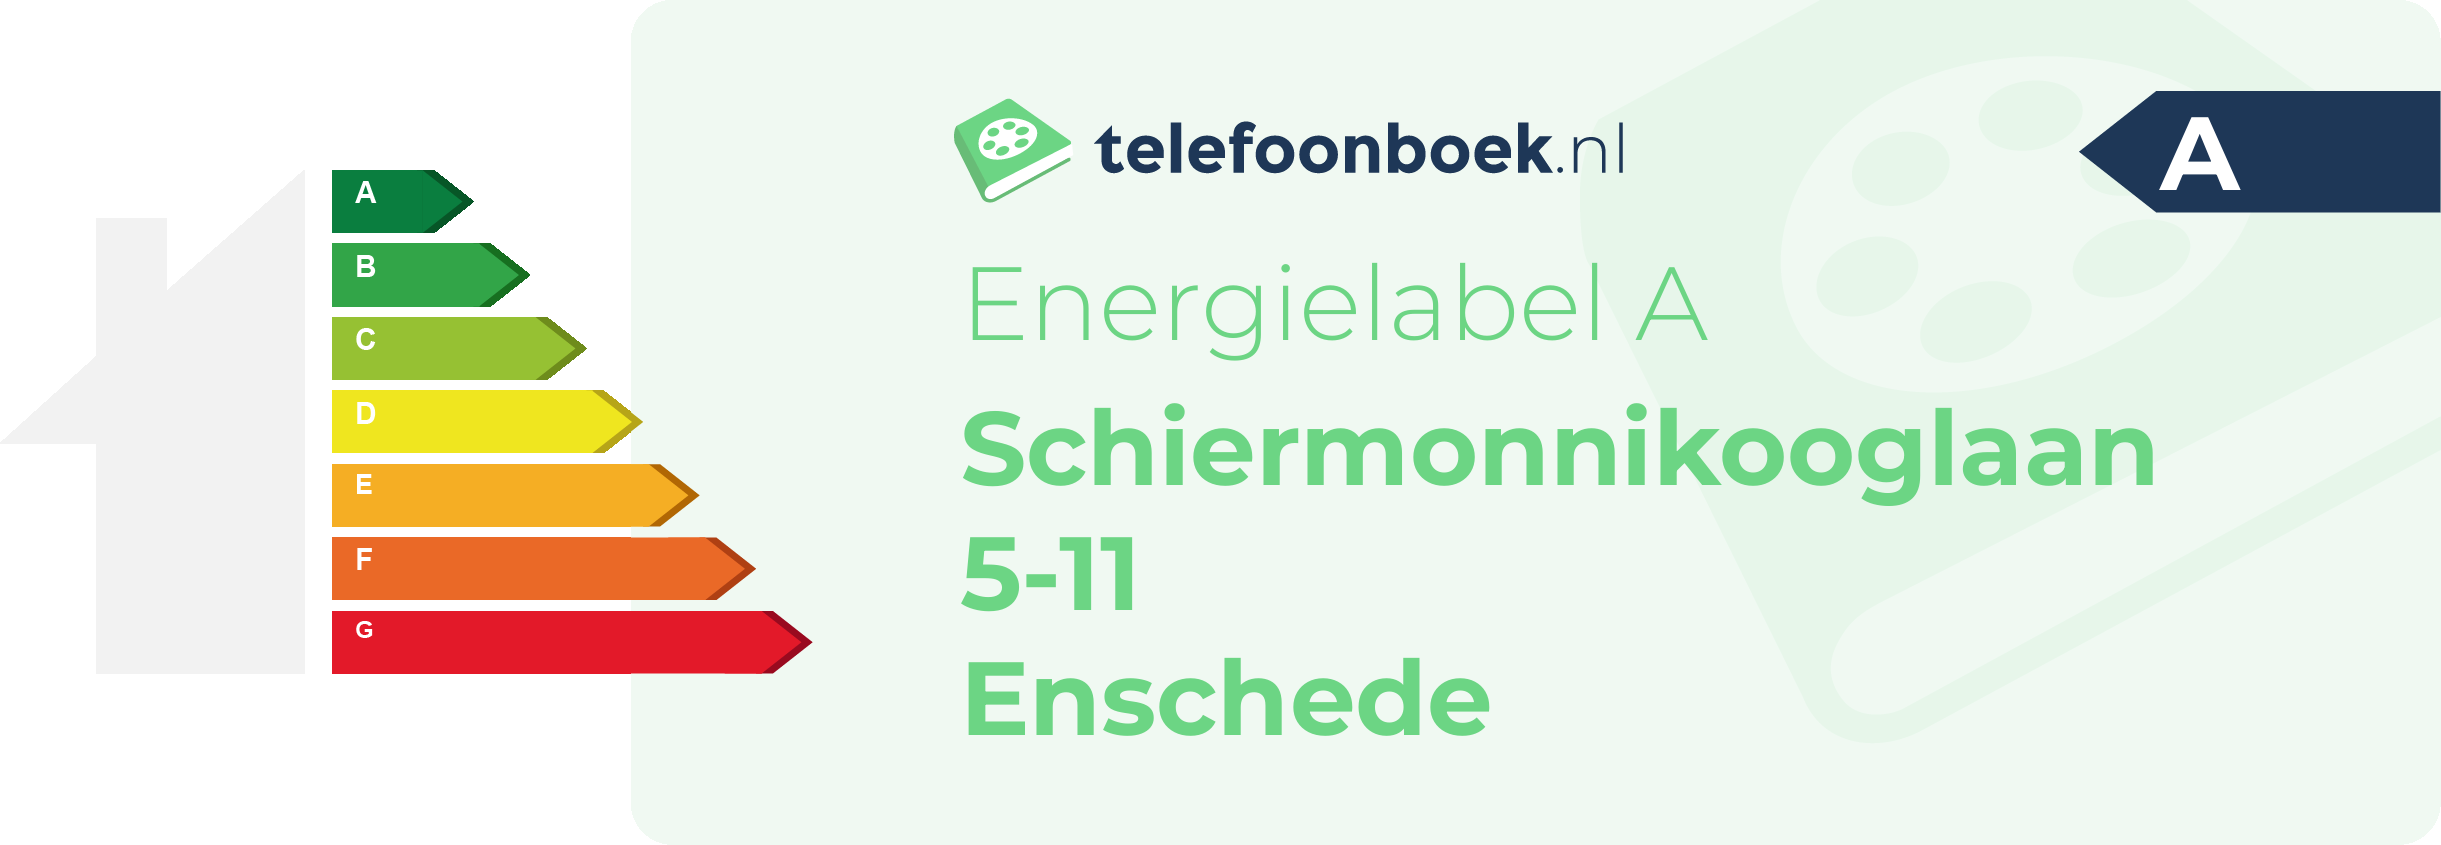 Energielabel Schiermonnikooglaan 5-11 Enschede